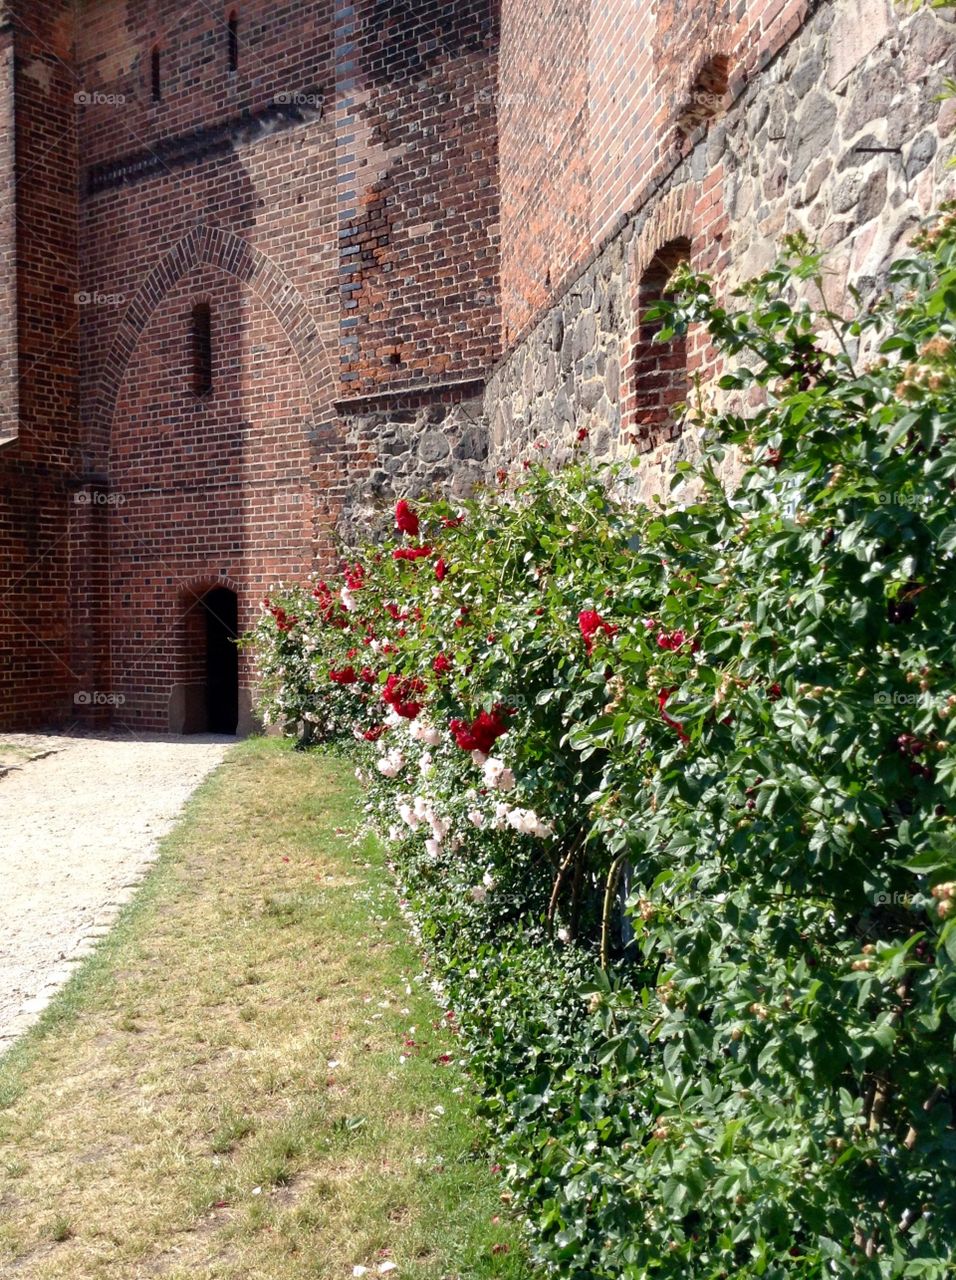 Garden in Malbork castle